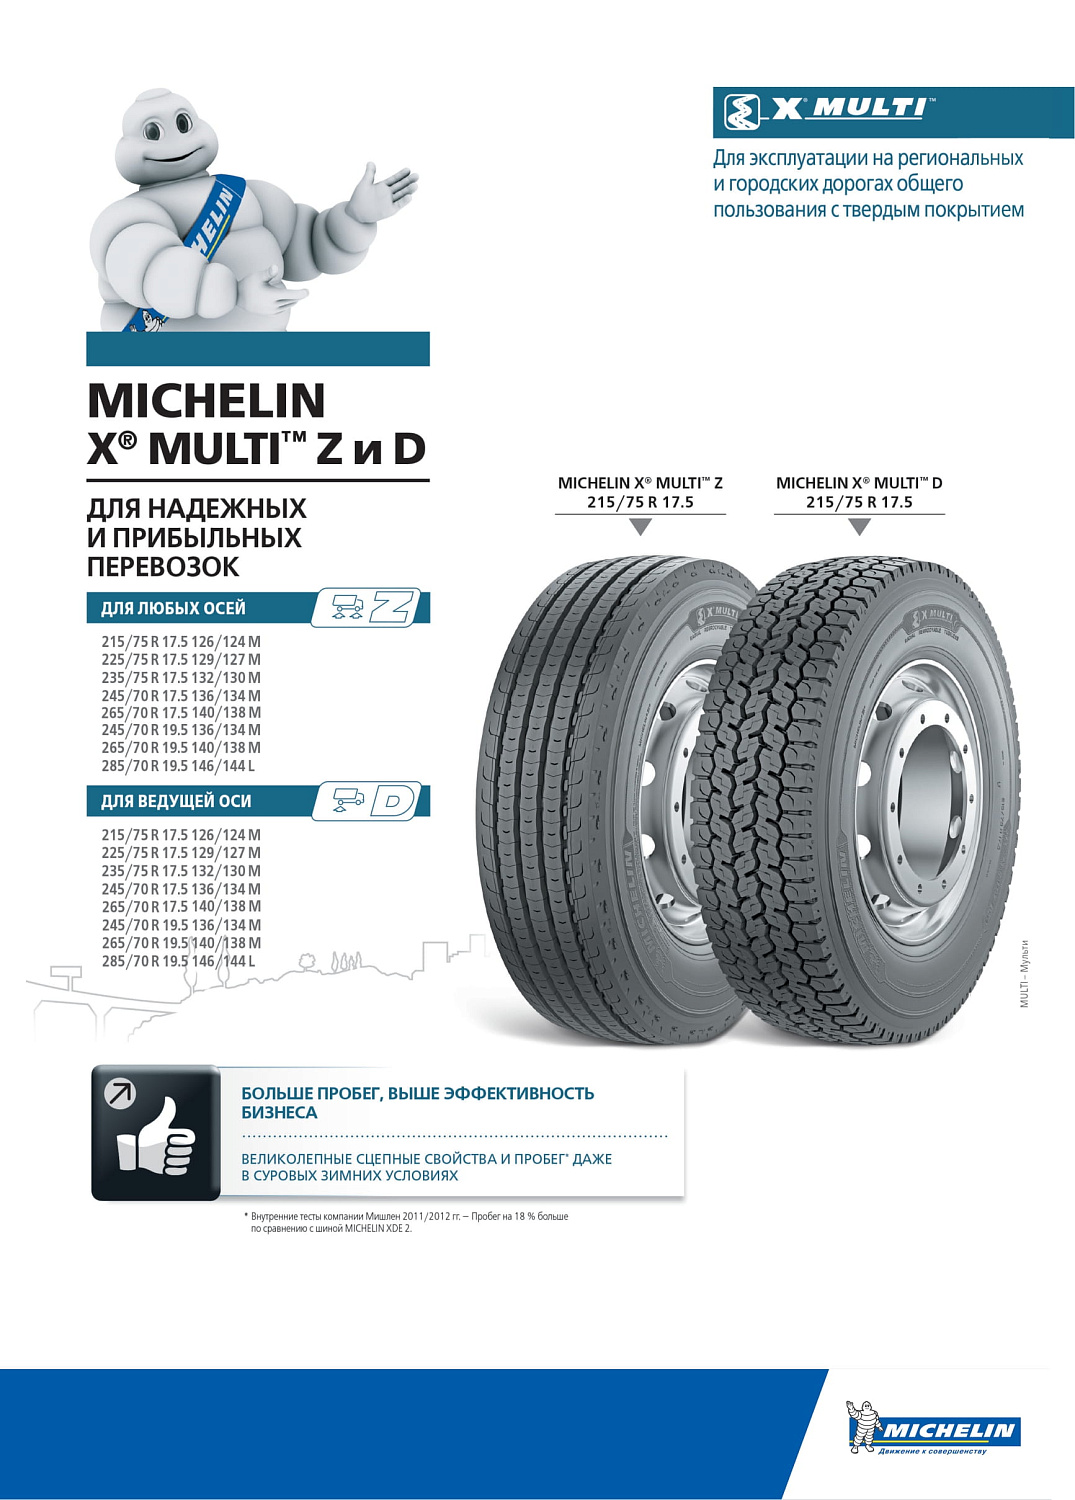 Michelin X Multi D 245/70 R17.5 TL